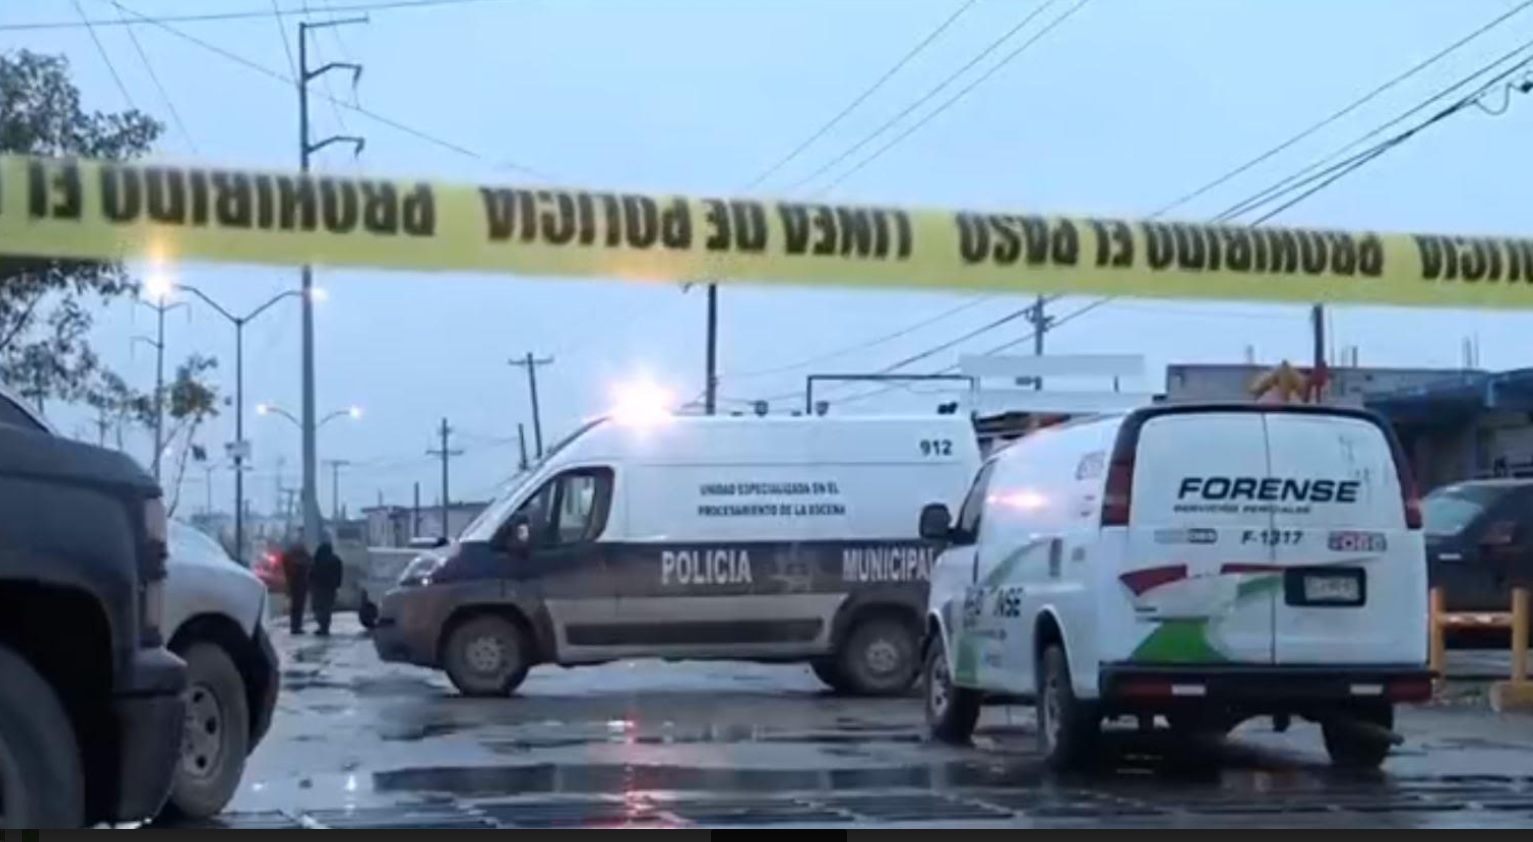 Asesinan a seis hombres en un taller mecánico en Cd. Juárez, Chihuahua